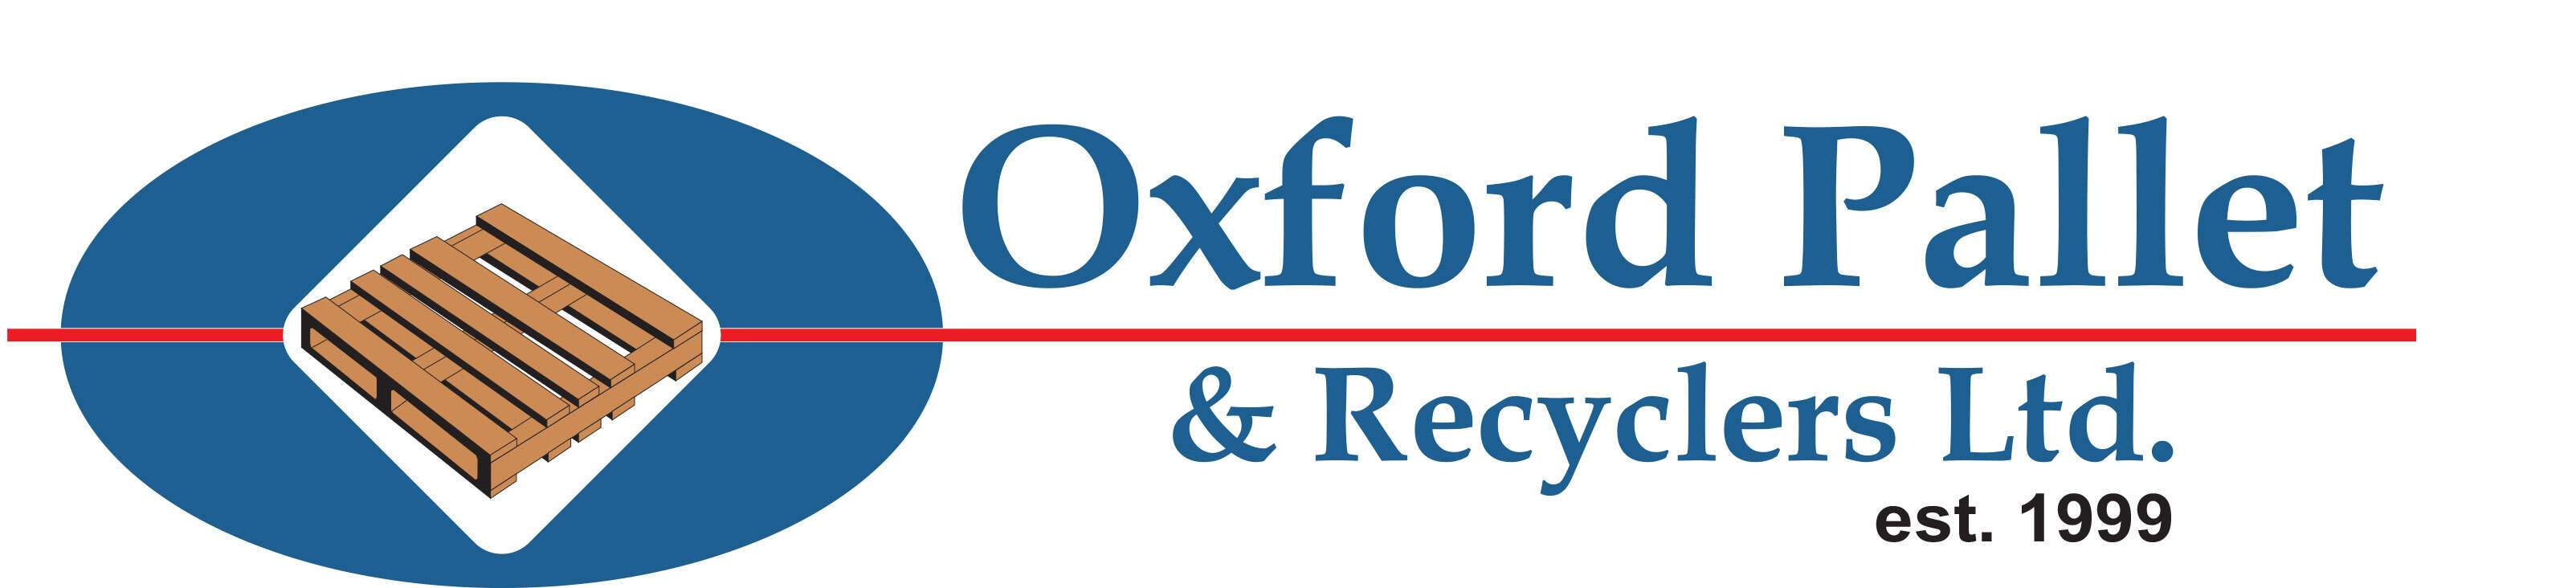 OxfordPallet-Logo.jpg